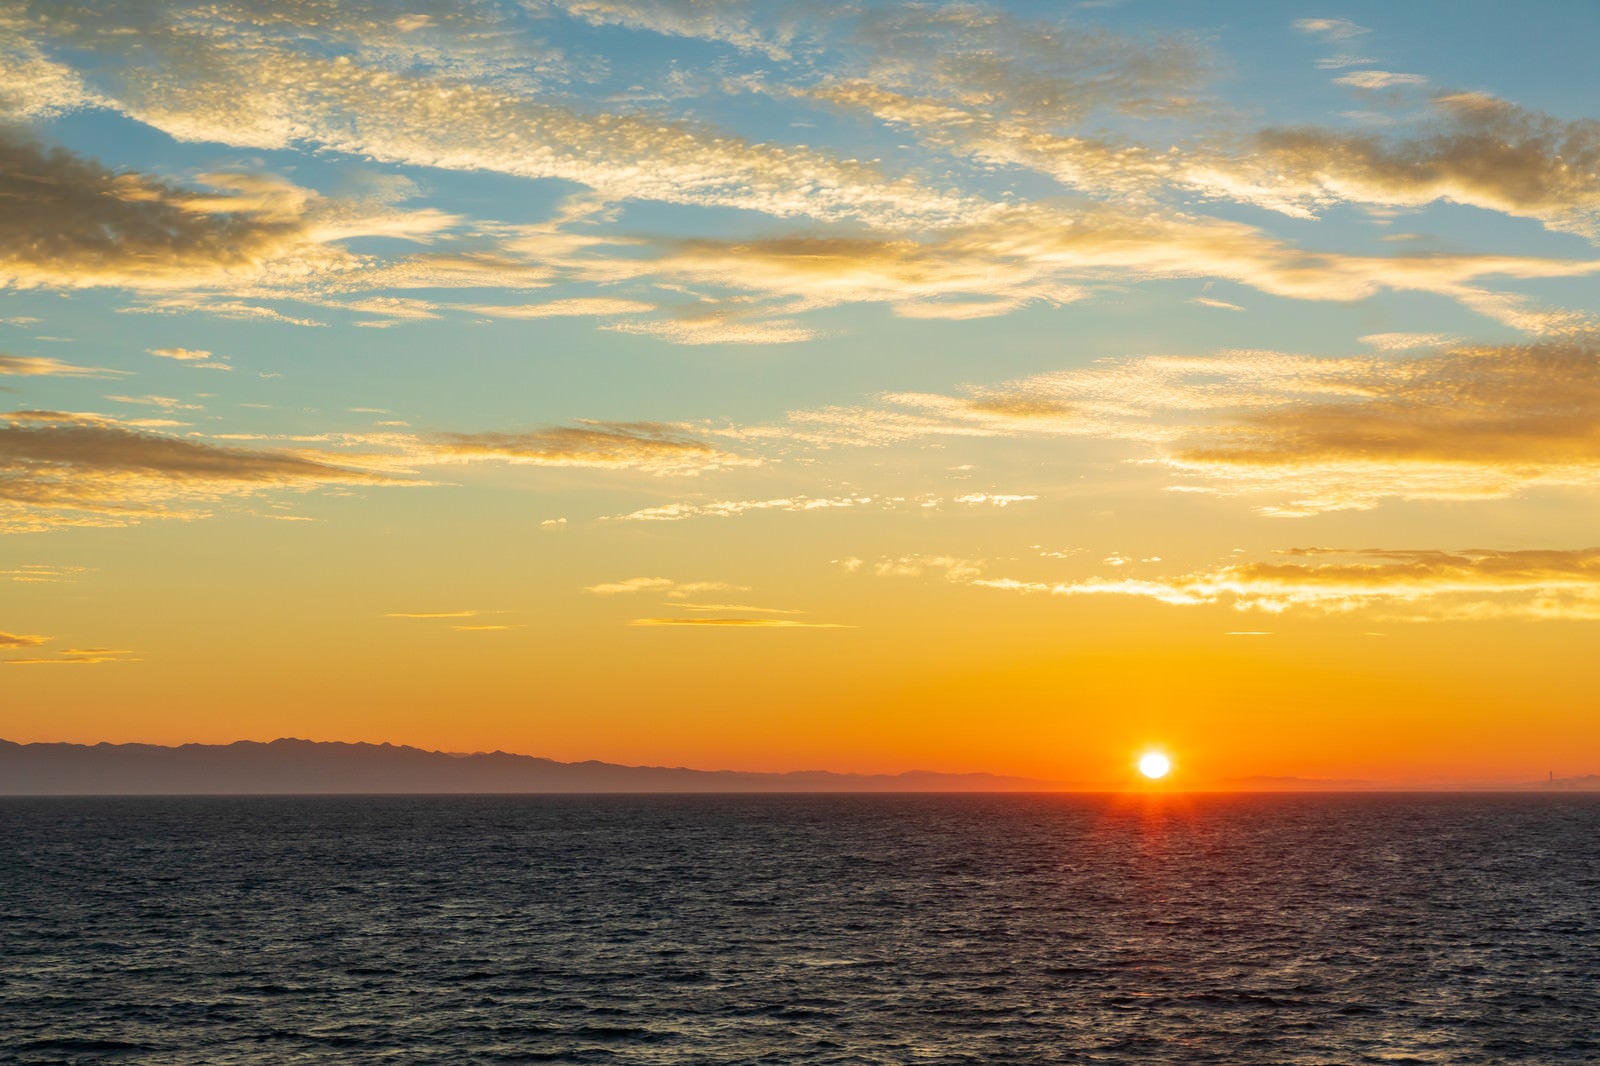 「日本海の夜明けと日の出」の写真